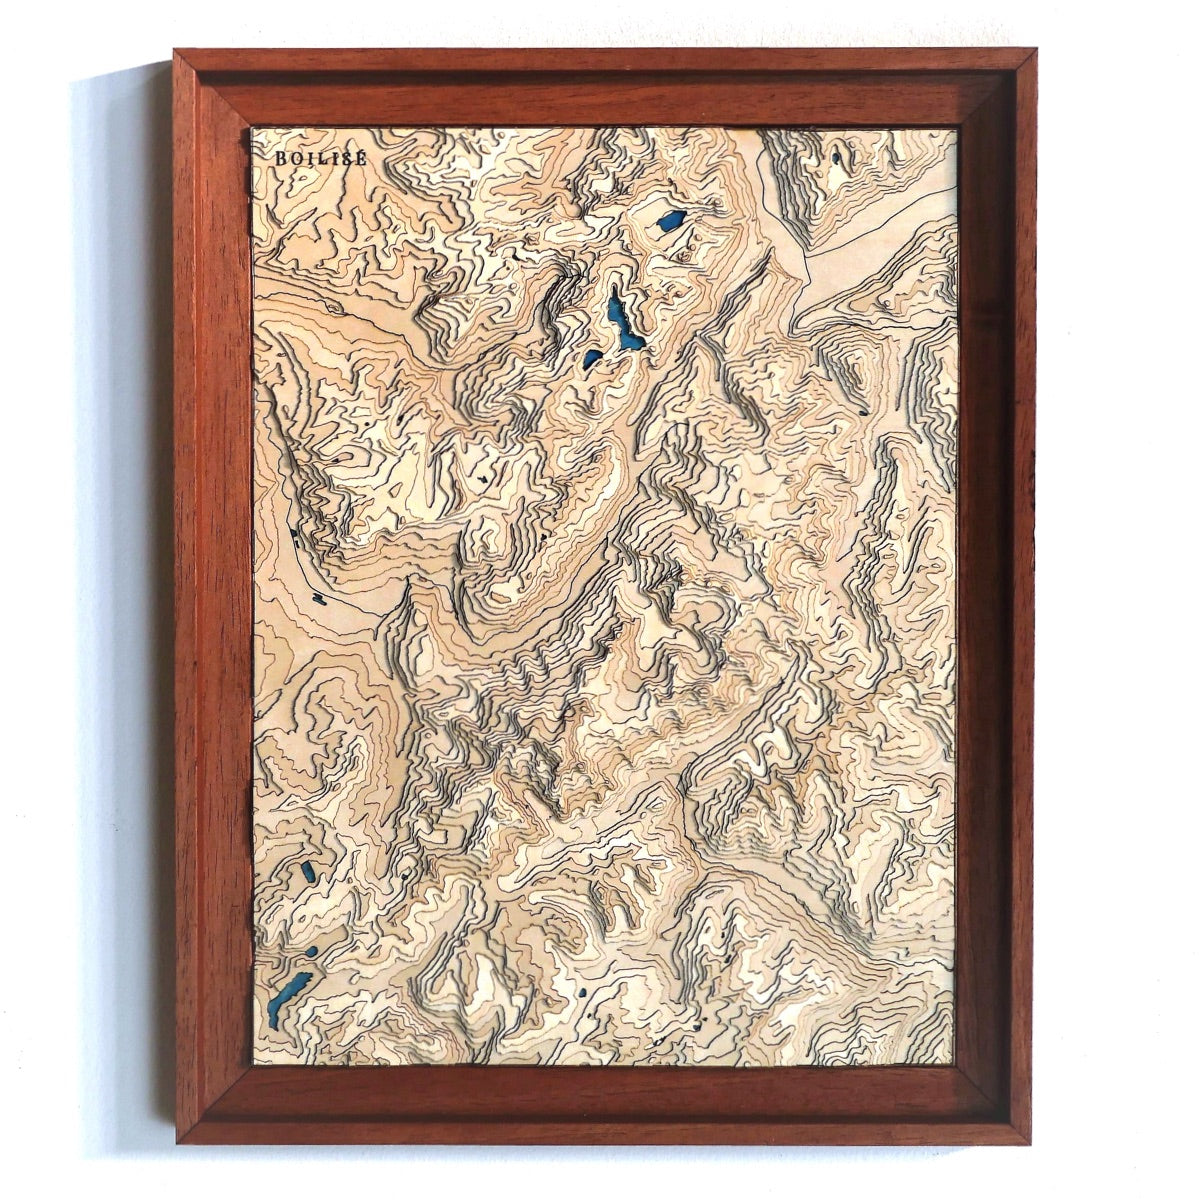 Carte topographique en relief du massif du mont blanc avec lacs bleus marine dans une caisse américaine brune